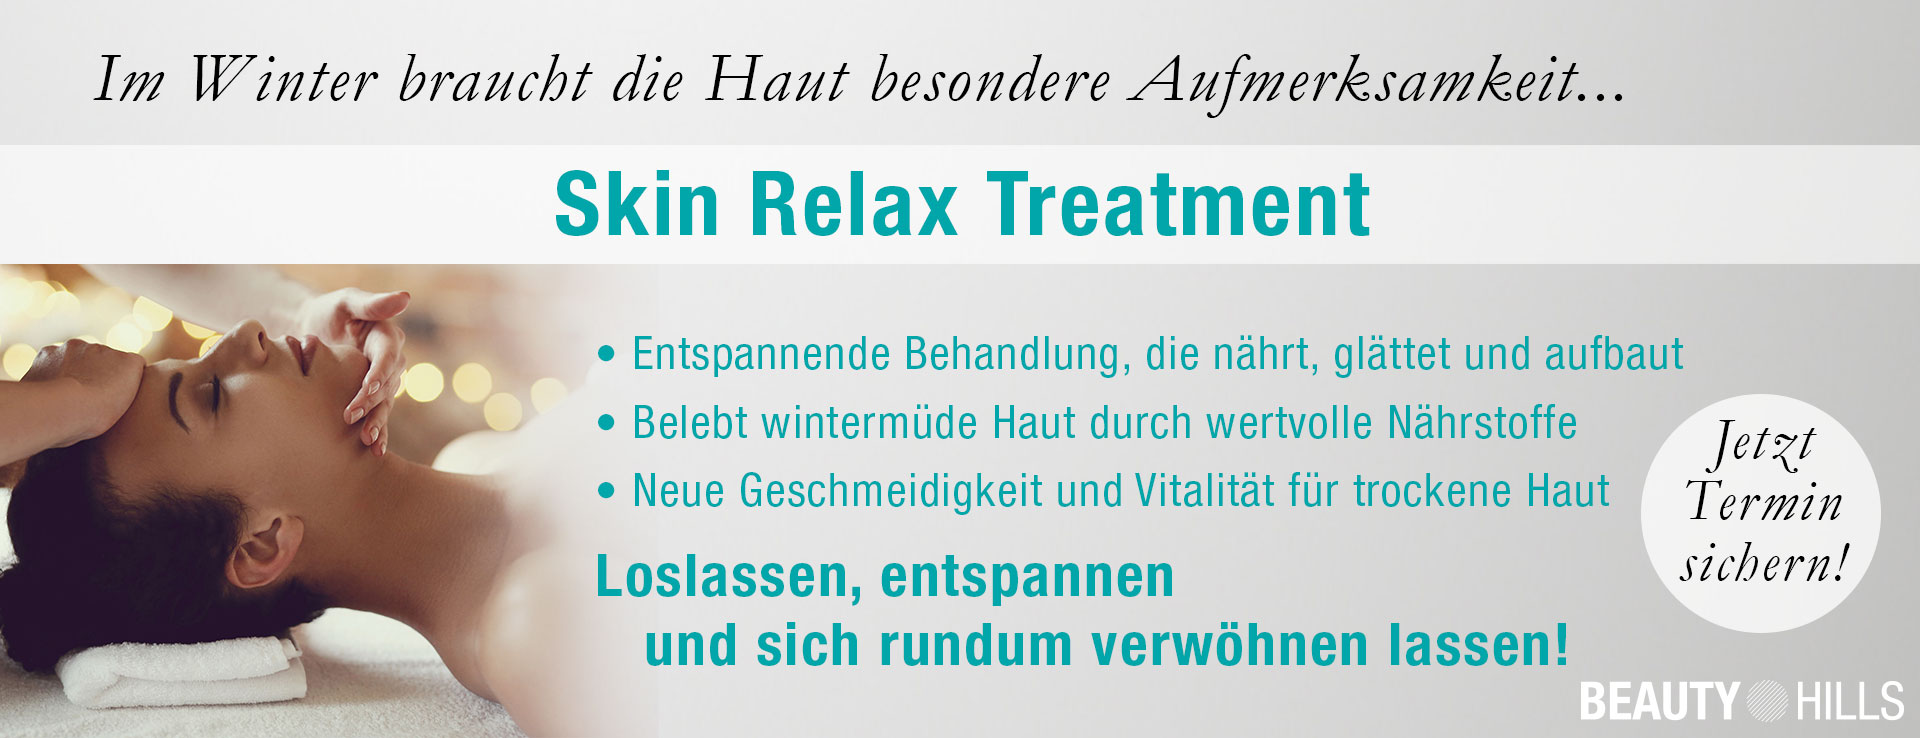 BHL_Onlinebanner_Skin-Relax-Behandlung_Webseite